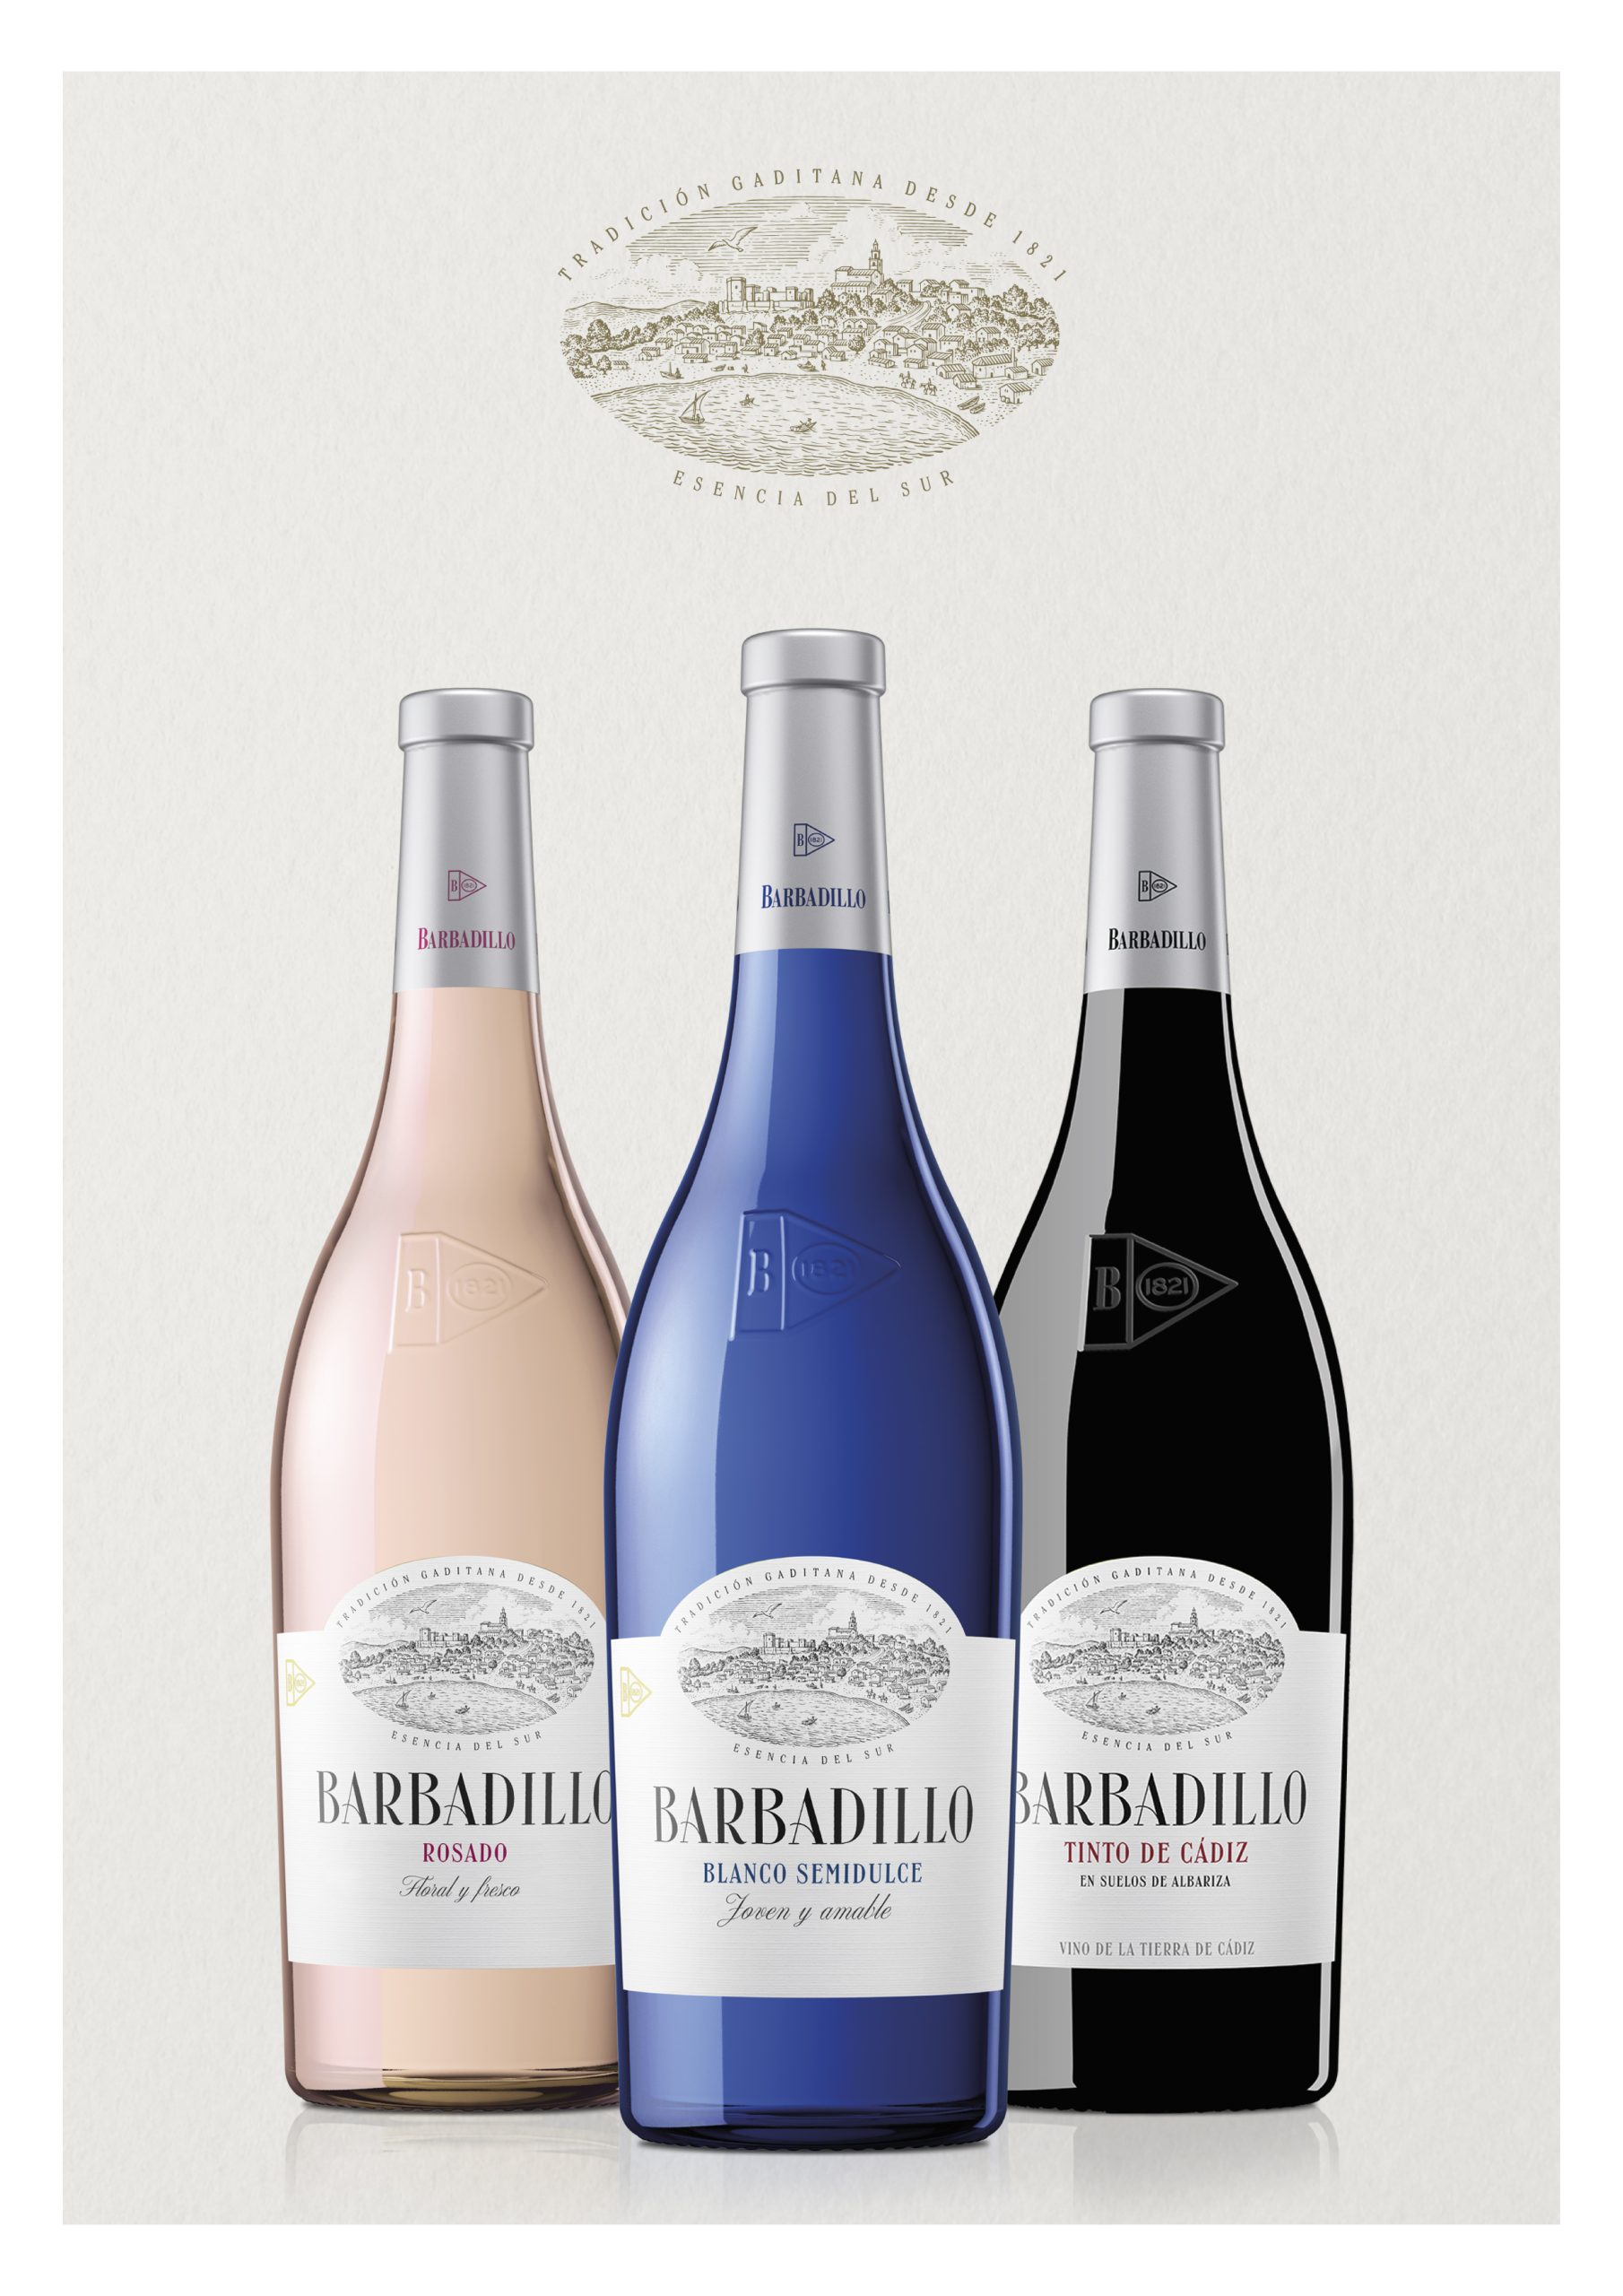 Bodegas Barbadillo unifica en una sola marca sus vinos más característicos